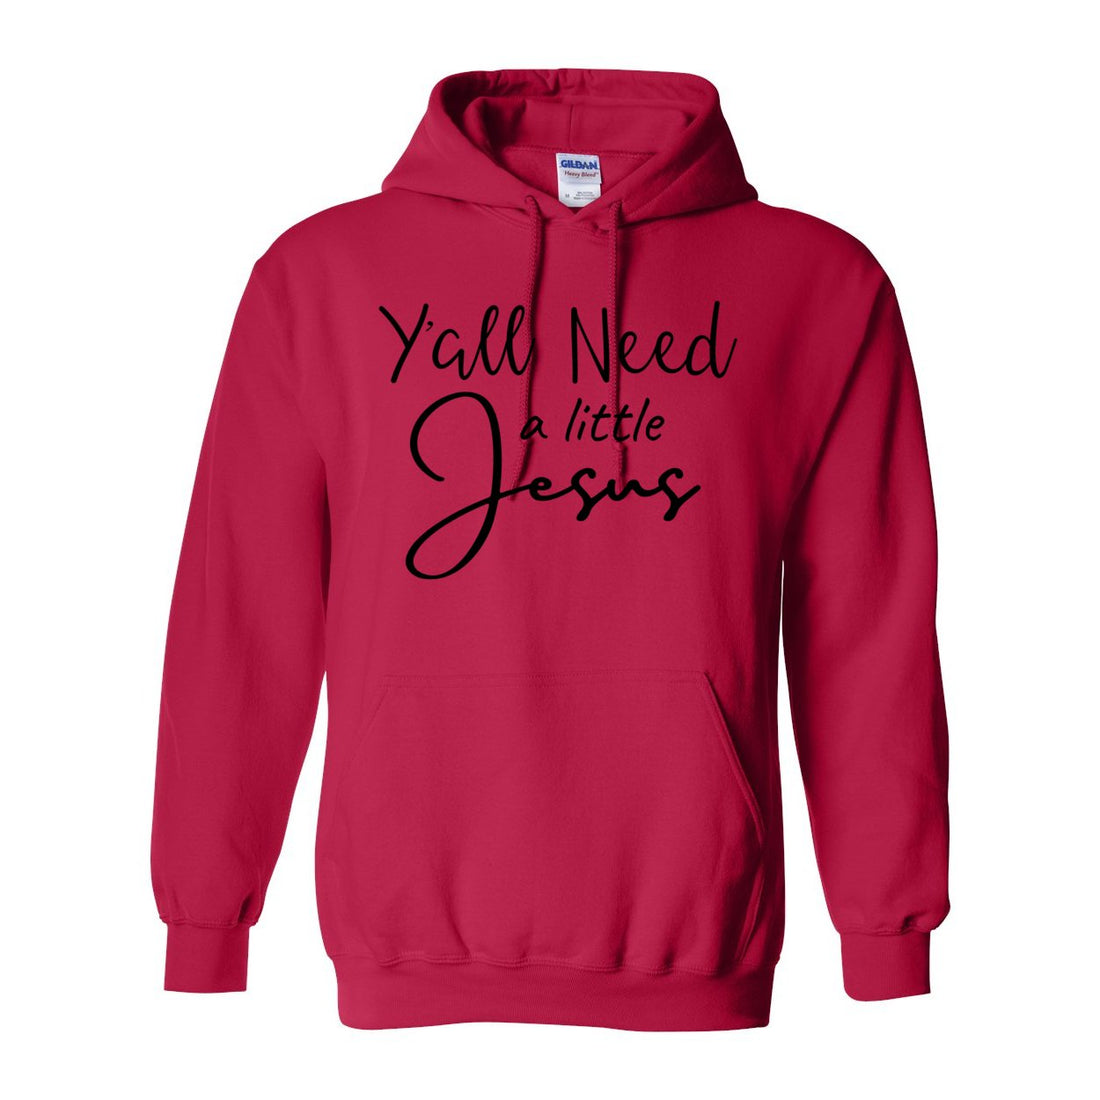 Y'all Need Jesus Hooded Sweatshirt - Sweaters/Hoodies - Positively Sassy - Y'all Need Jesus Hooded Sweatshirt